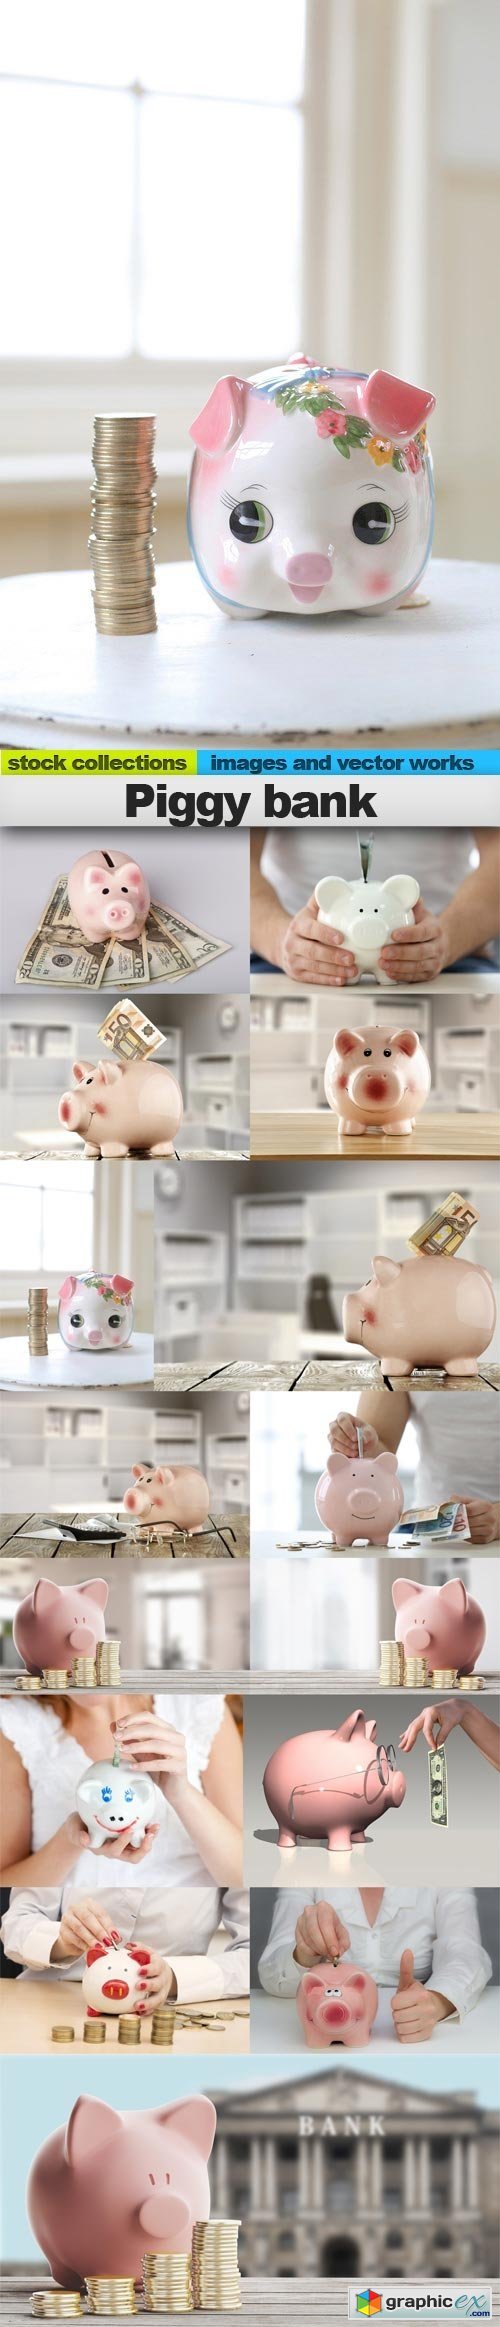 Piggy bank, 15 x UHQ JPEG